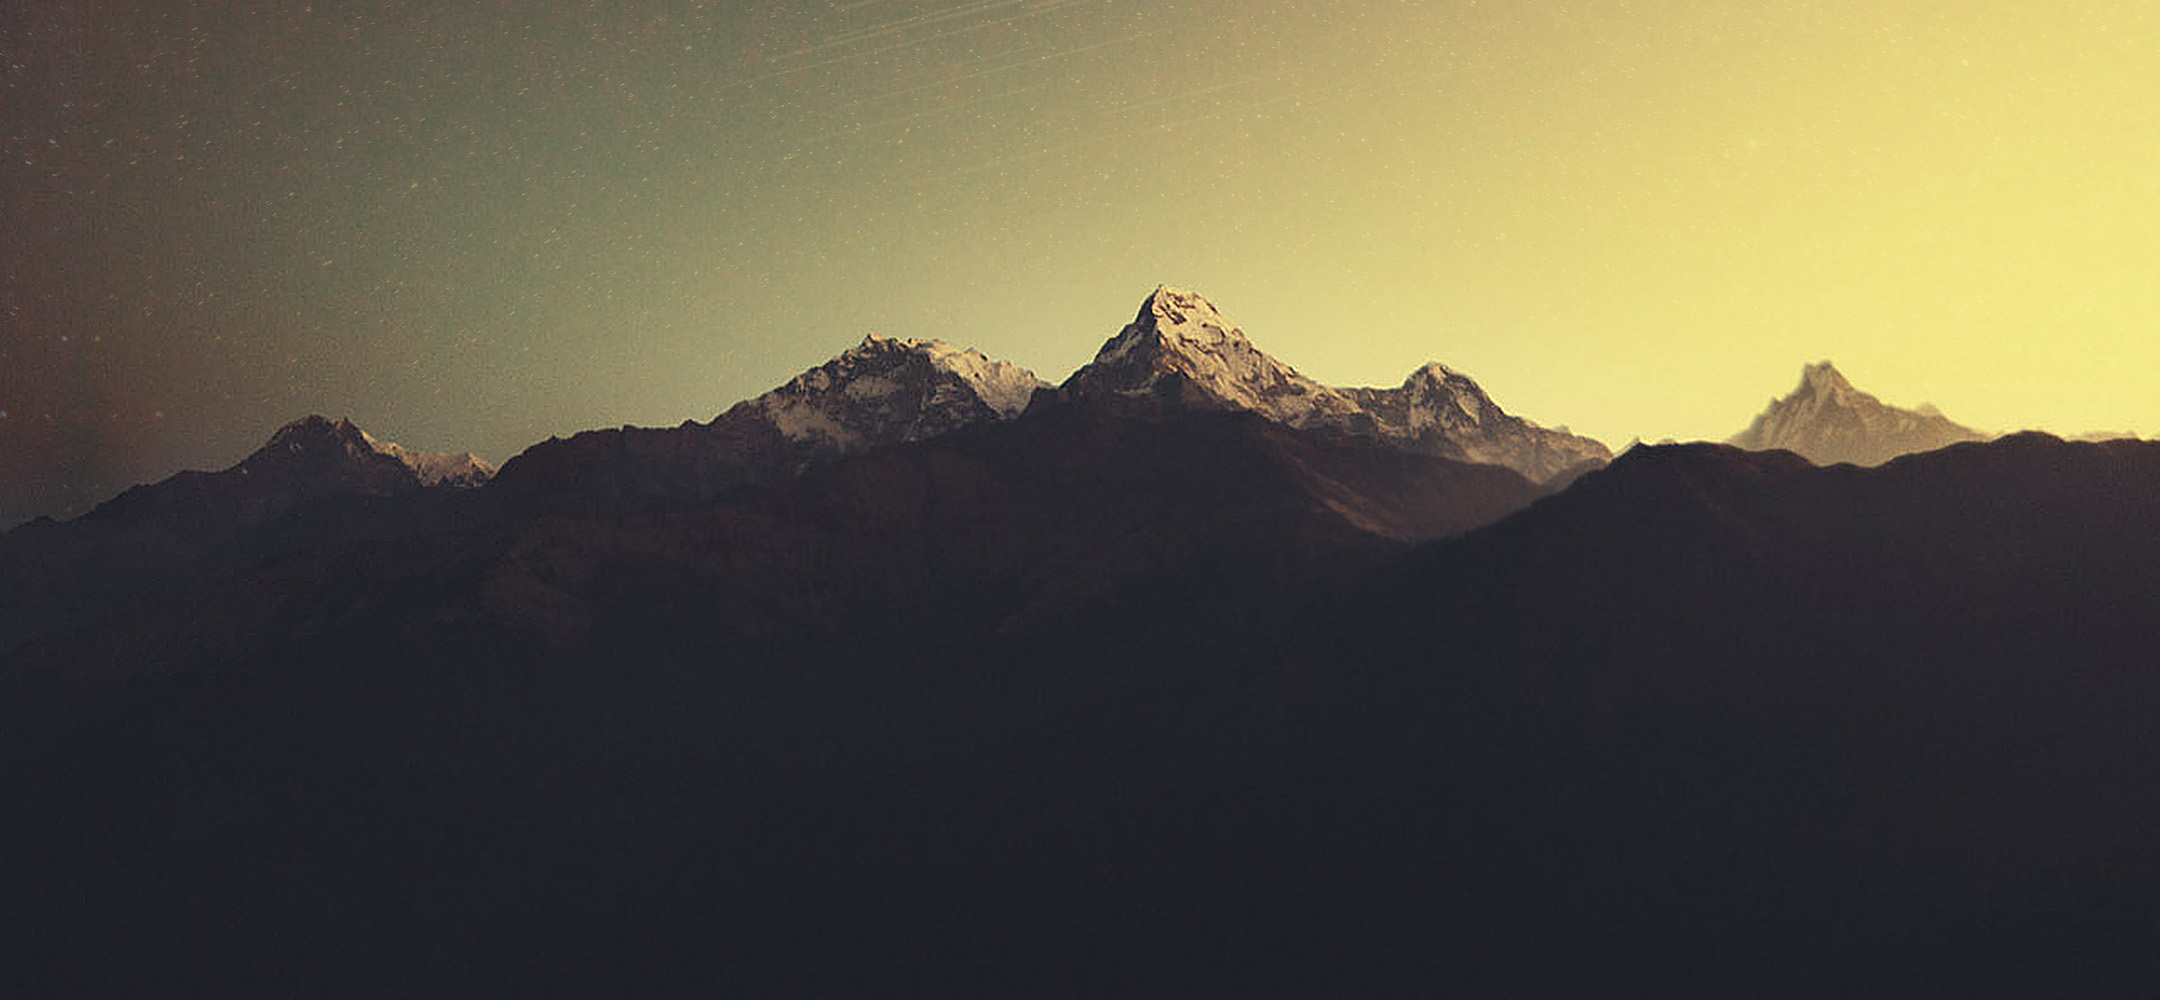 Annapurna , HD Wallpaper & Backgrounds